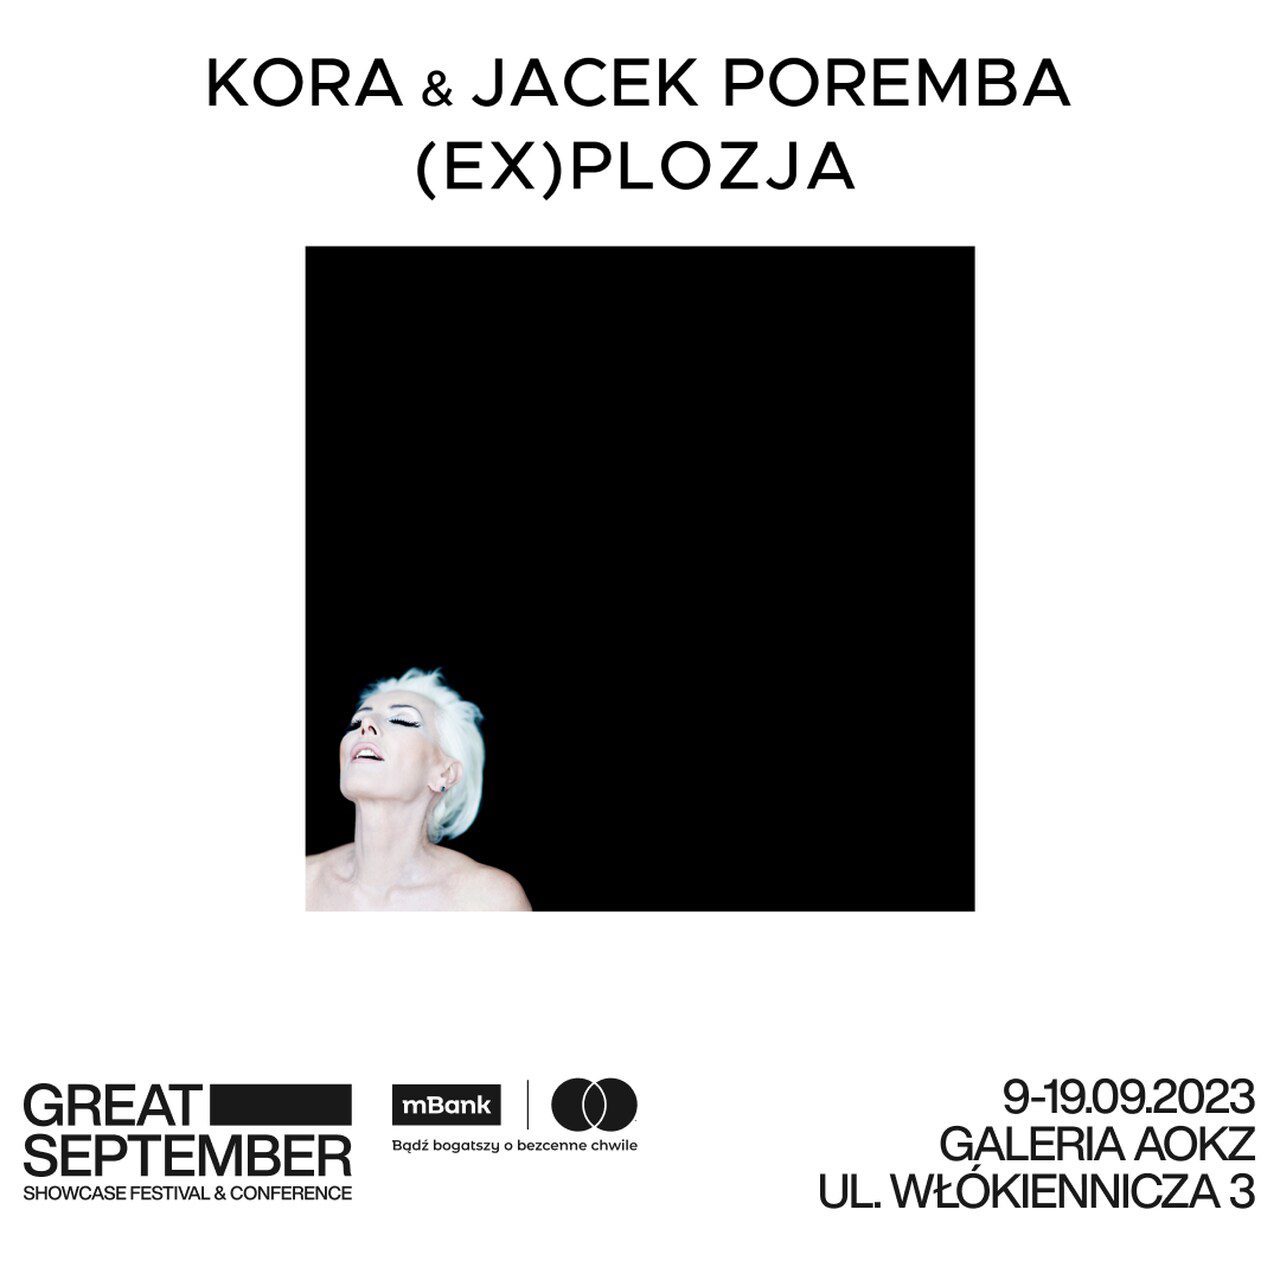 (EX)plozja nieznanych zdjęć Kory na wystawie Jacka Poremby – do zobaczenia między koncertami na Great September w Łodzi